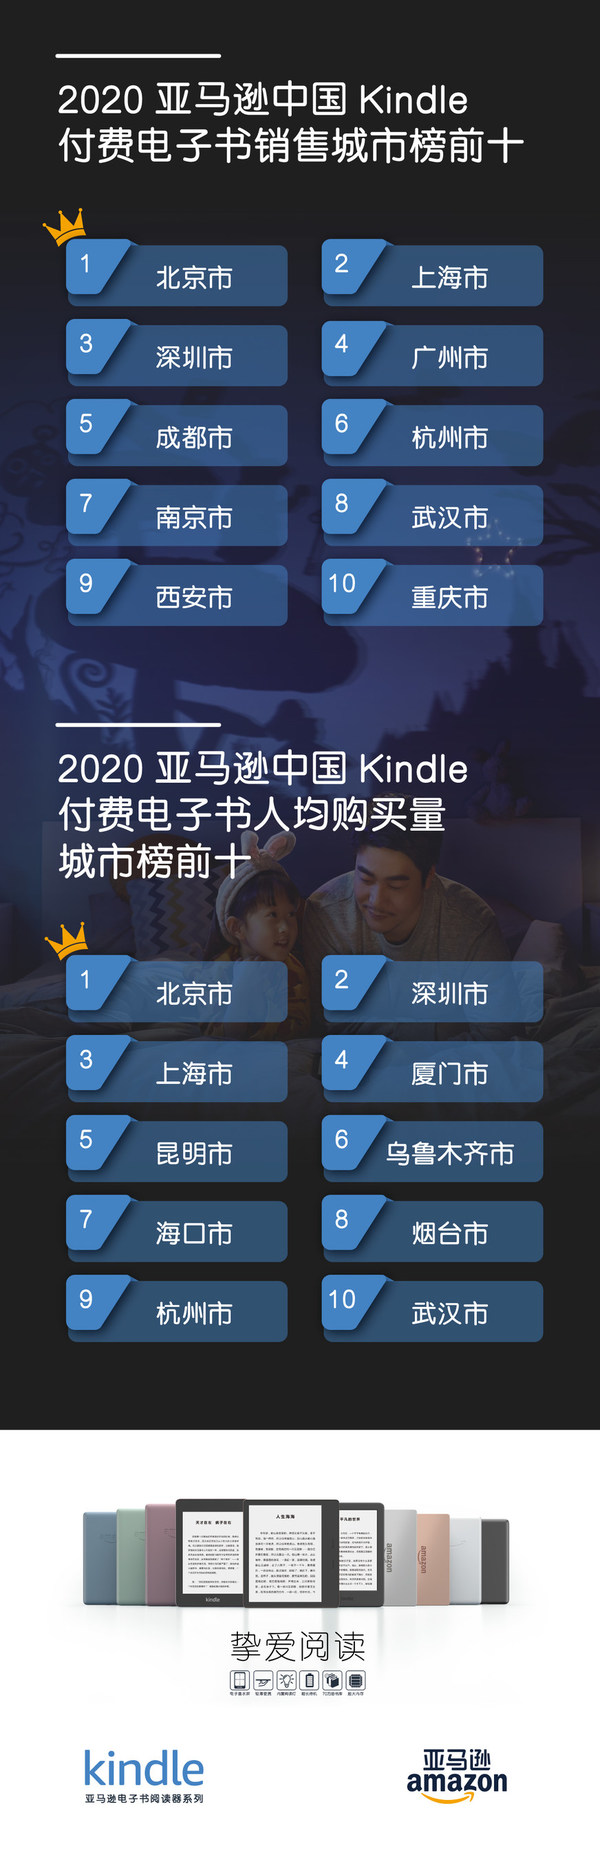 亚马逊中国发布年度Kindle阅读榜单，权威解读2020年中国读者数字阅读趋势与特征。